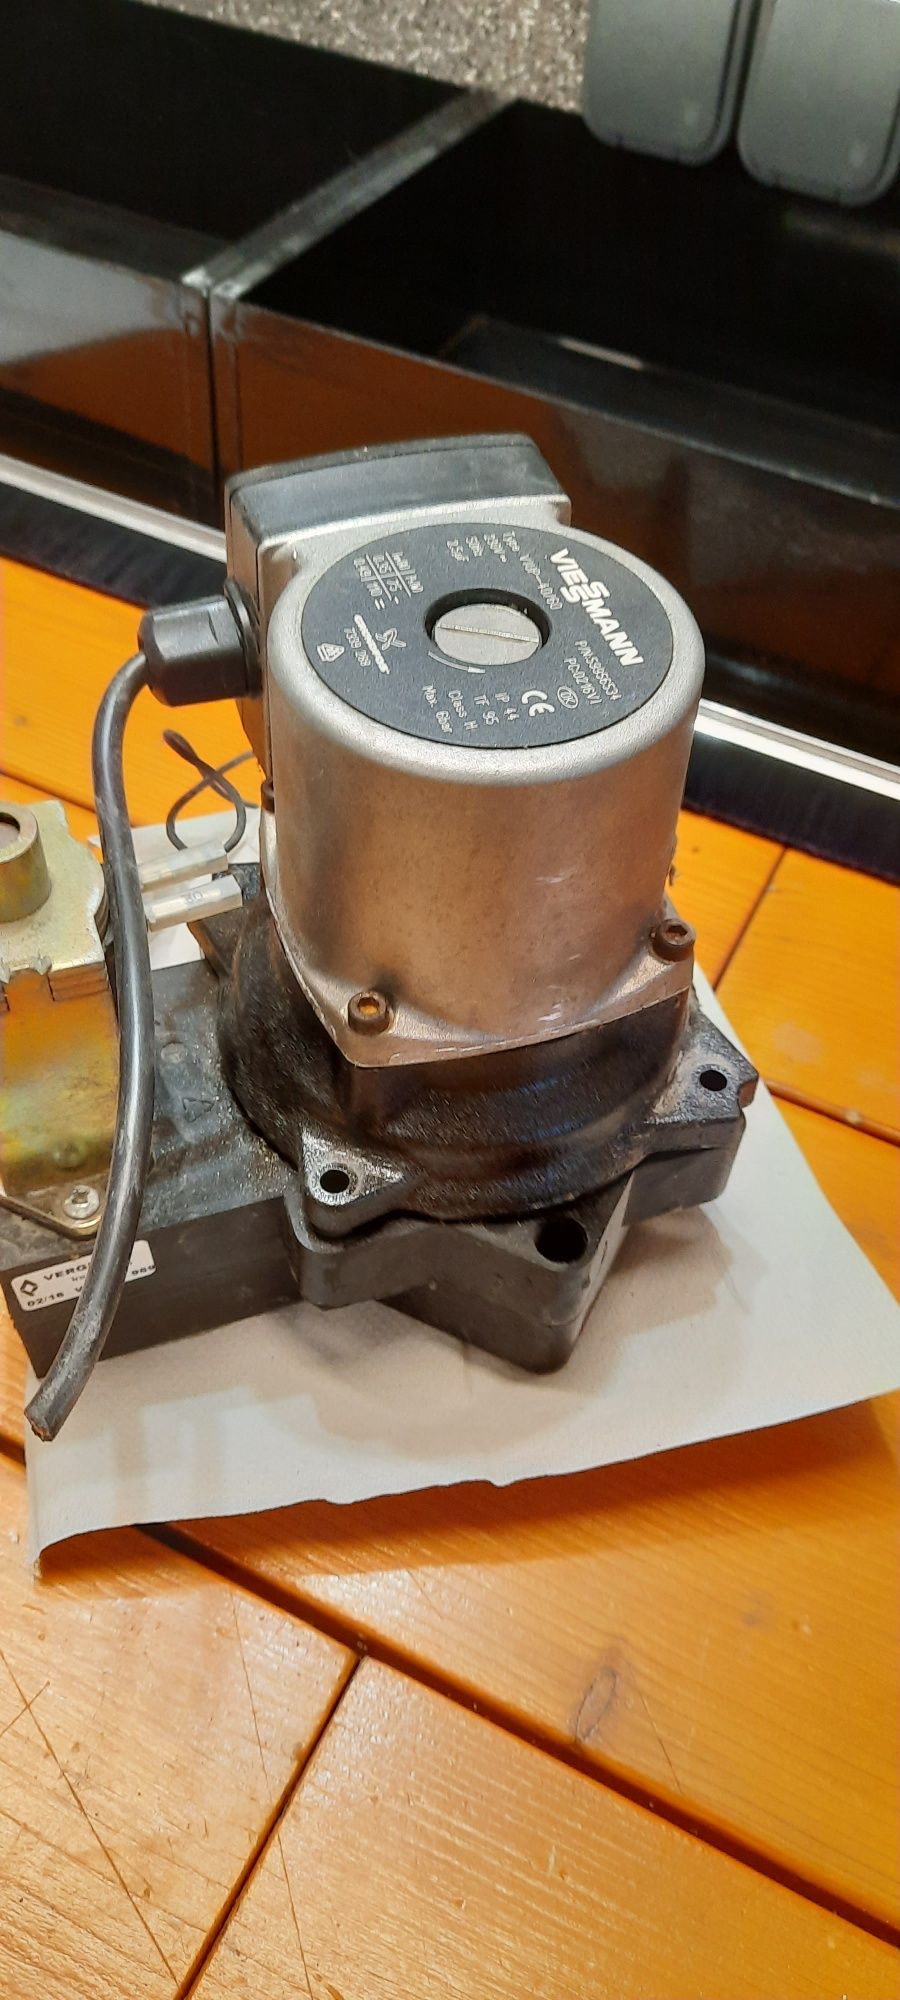 Pompa Silnik pompy Viessmann  VIUP- 40/60 GRUNDFOS mało używany